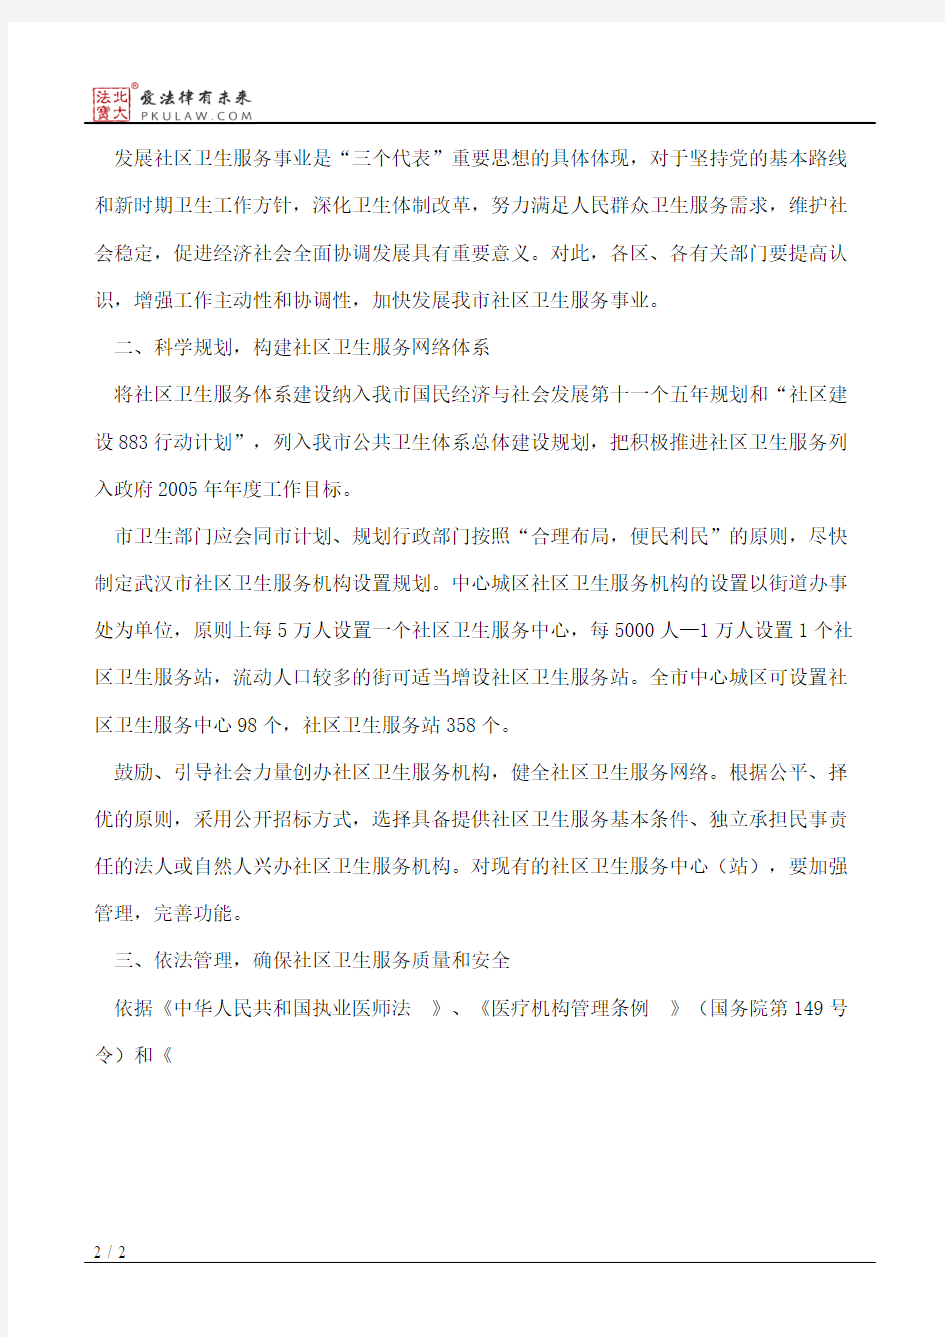 武汉市人民政府关于加强城市社区卫生服务工作保障社区居民基本医